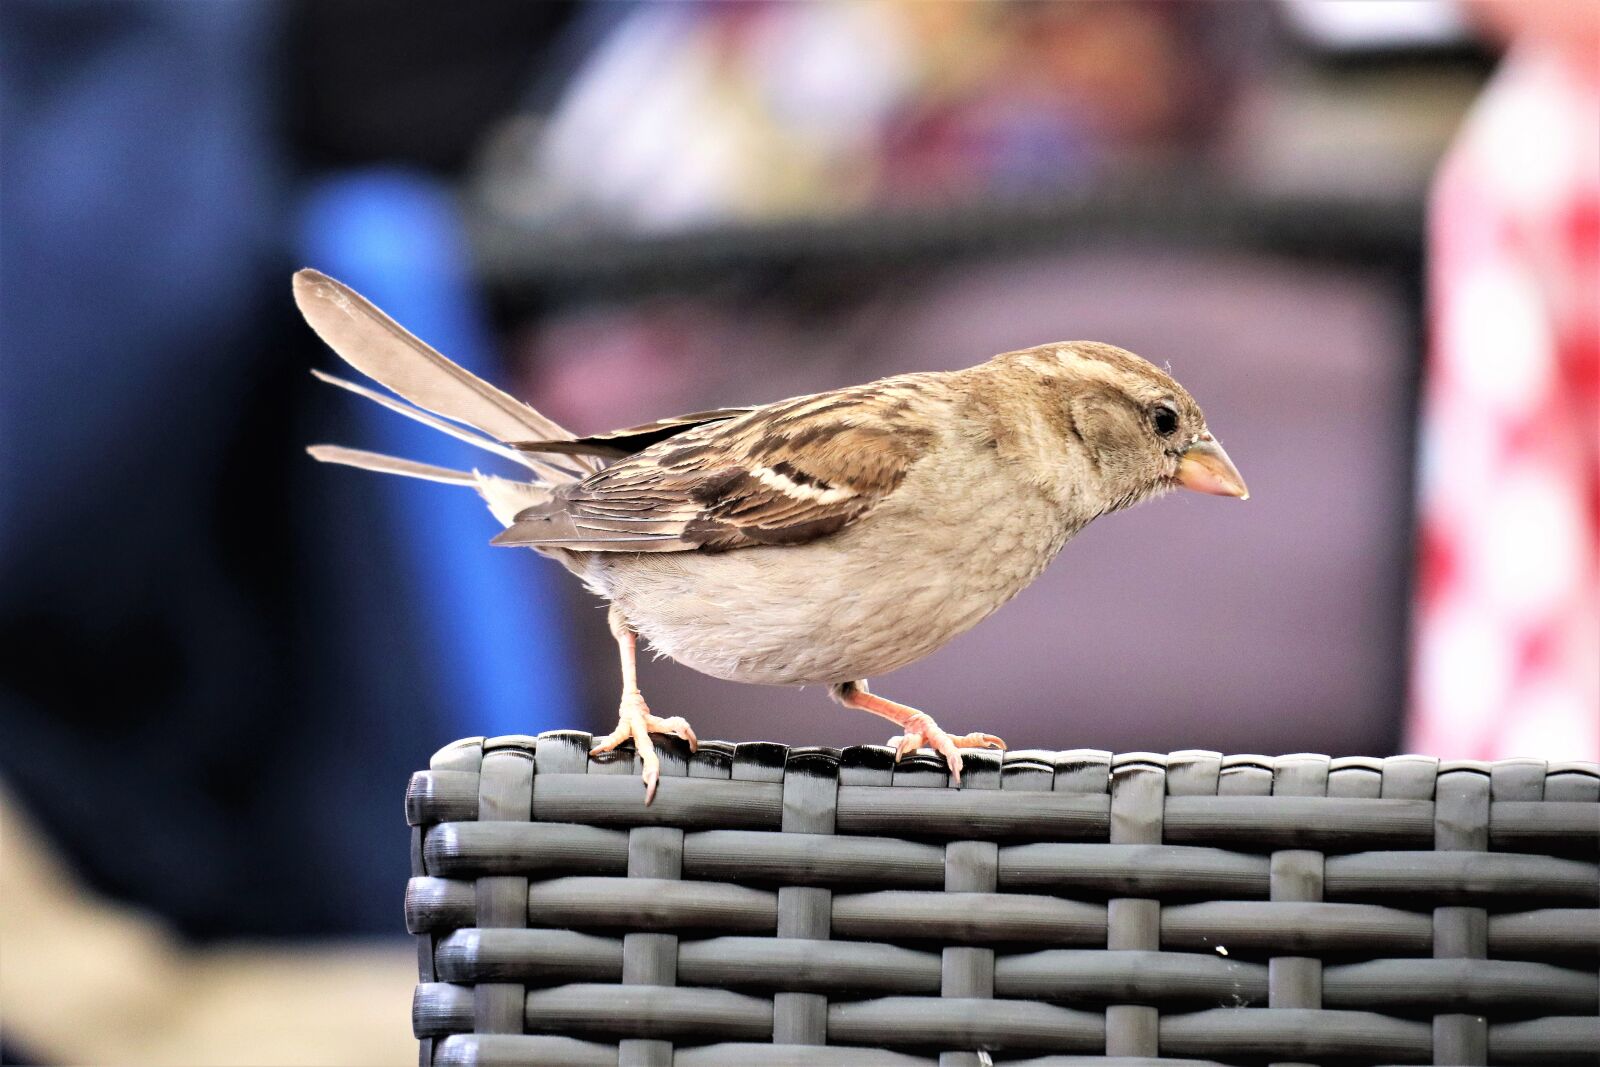 Canon EOS M6 sample photo. The sparrow, animals, bird photography